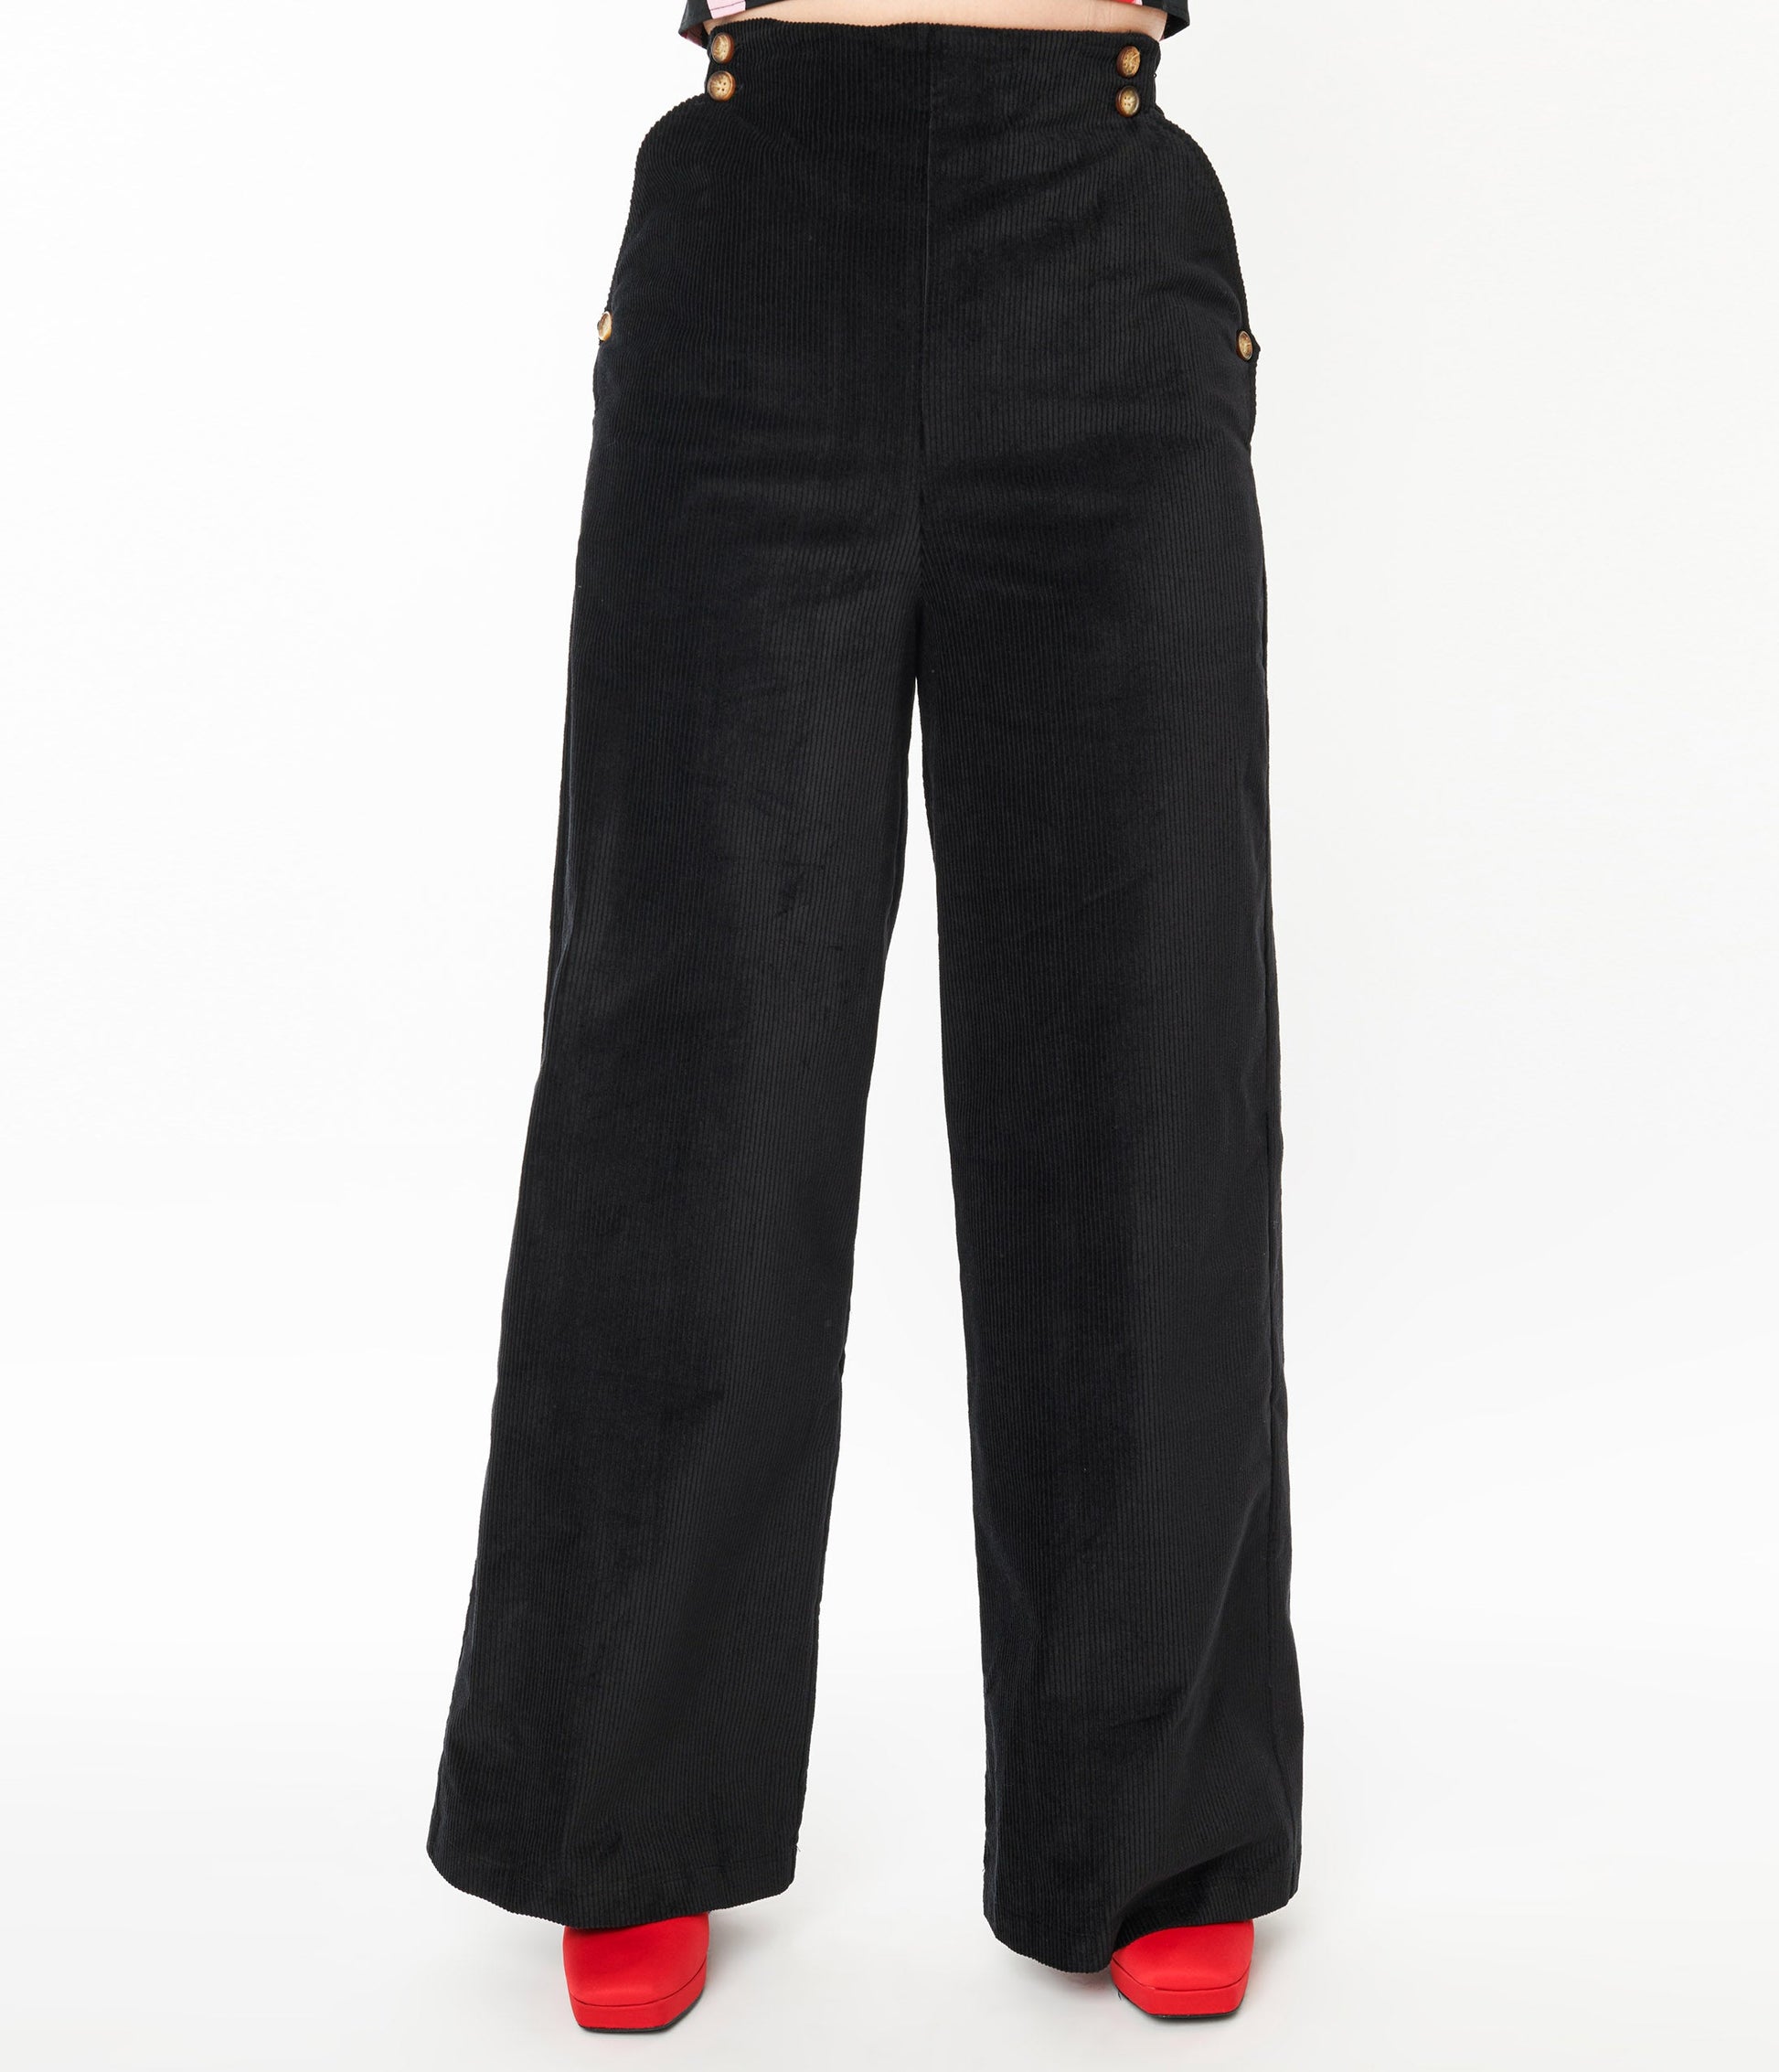 Unique Vintage 1940s Solid Black High Waist Pants